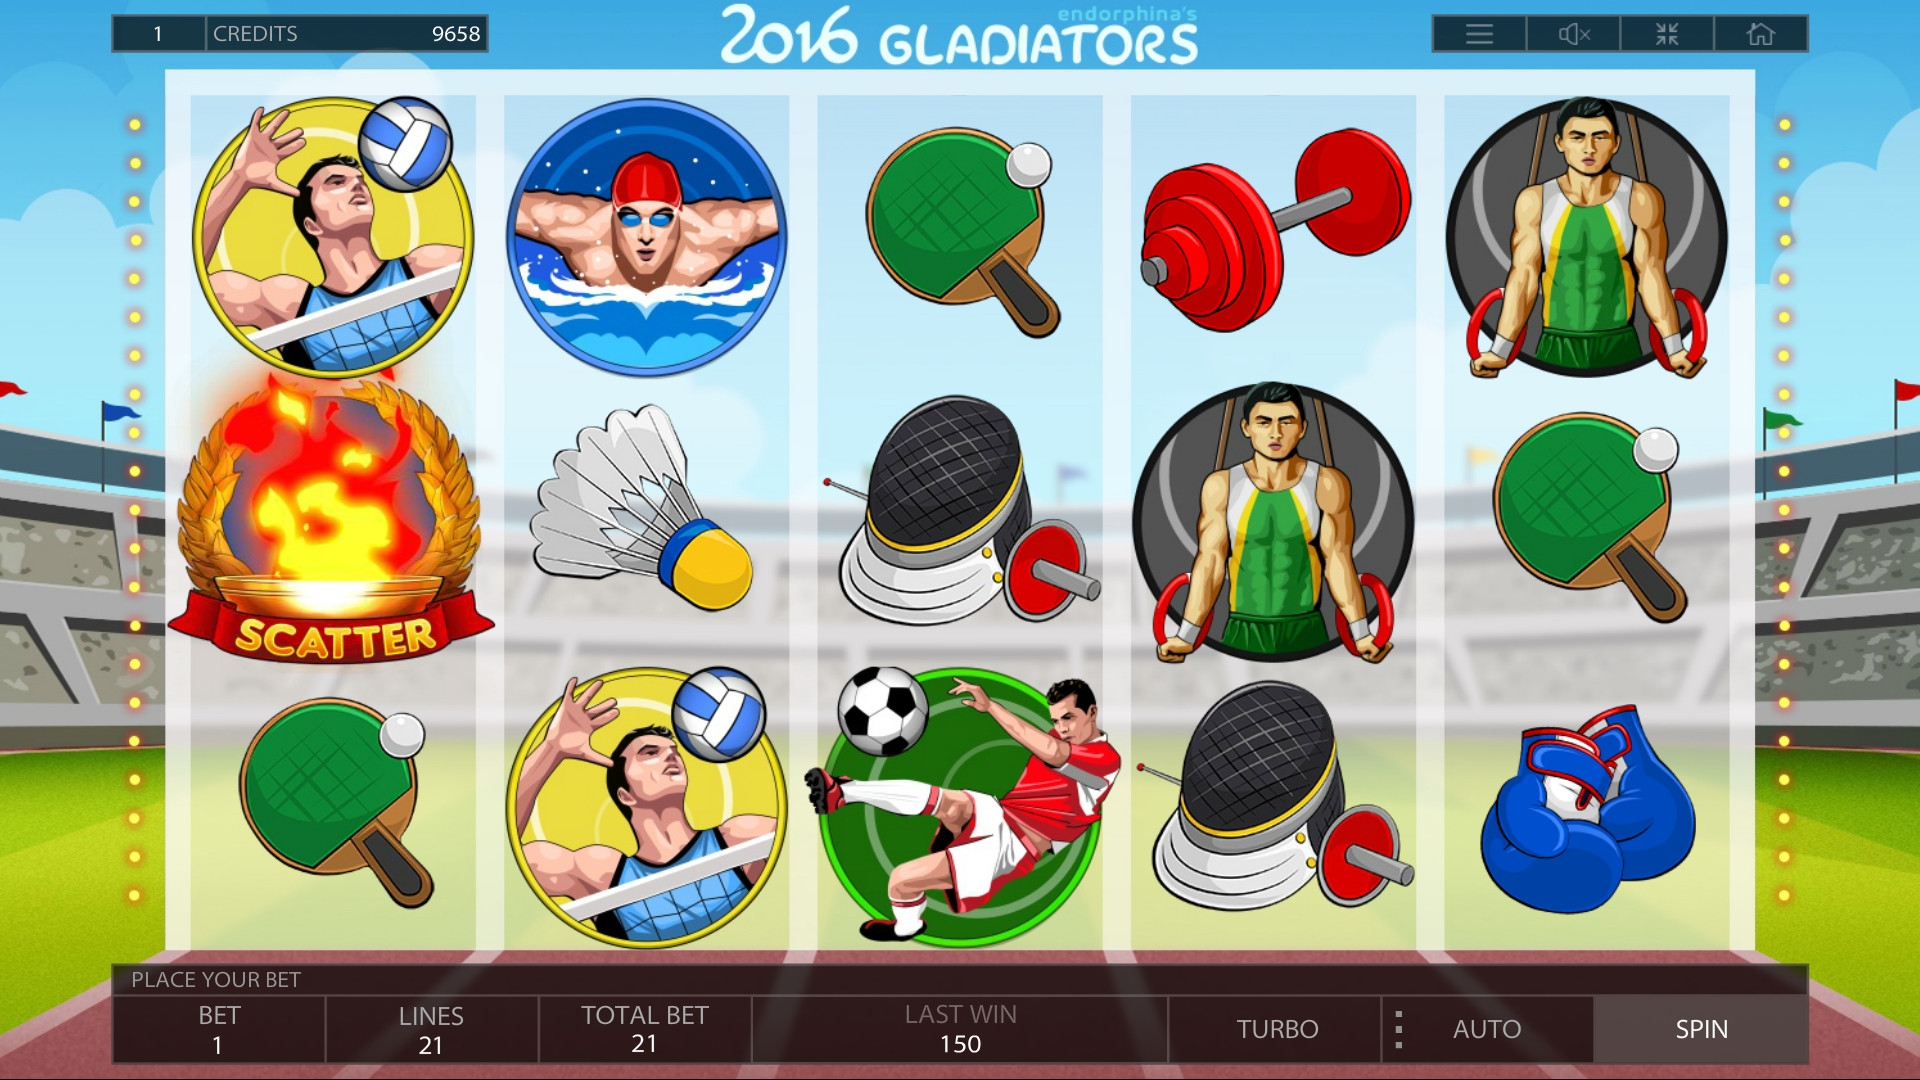 2016 Gladiators (Гладиаторы 2016) из раздела Игровые автоматы